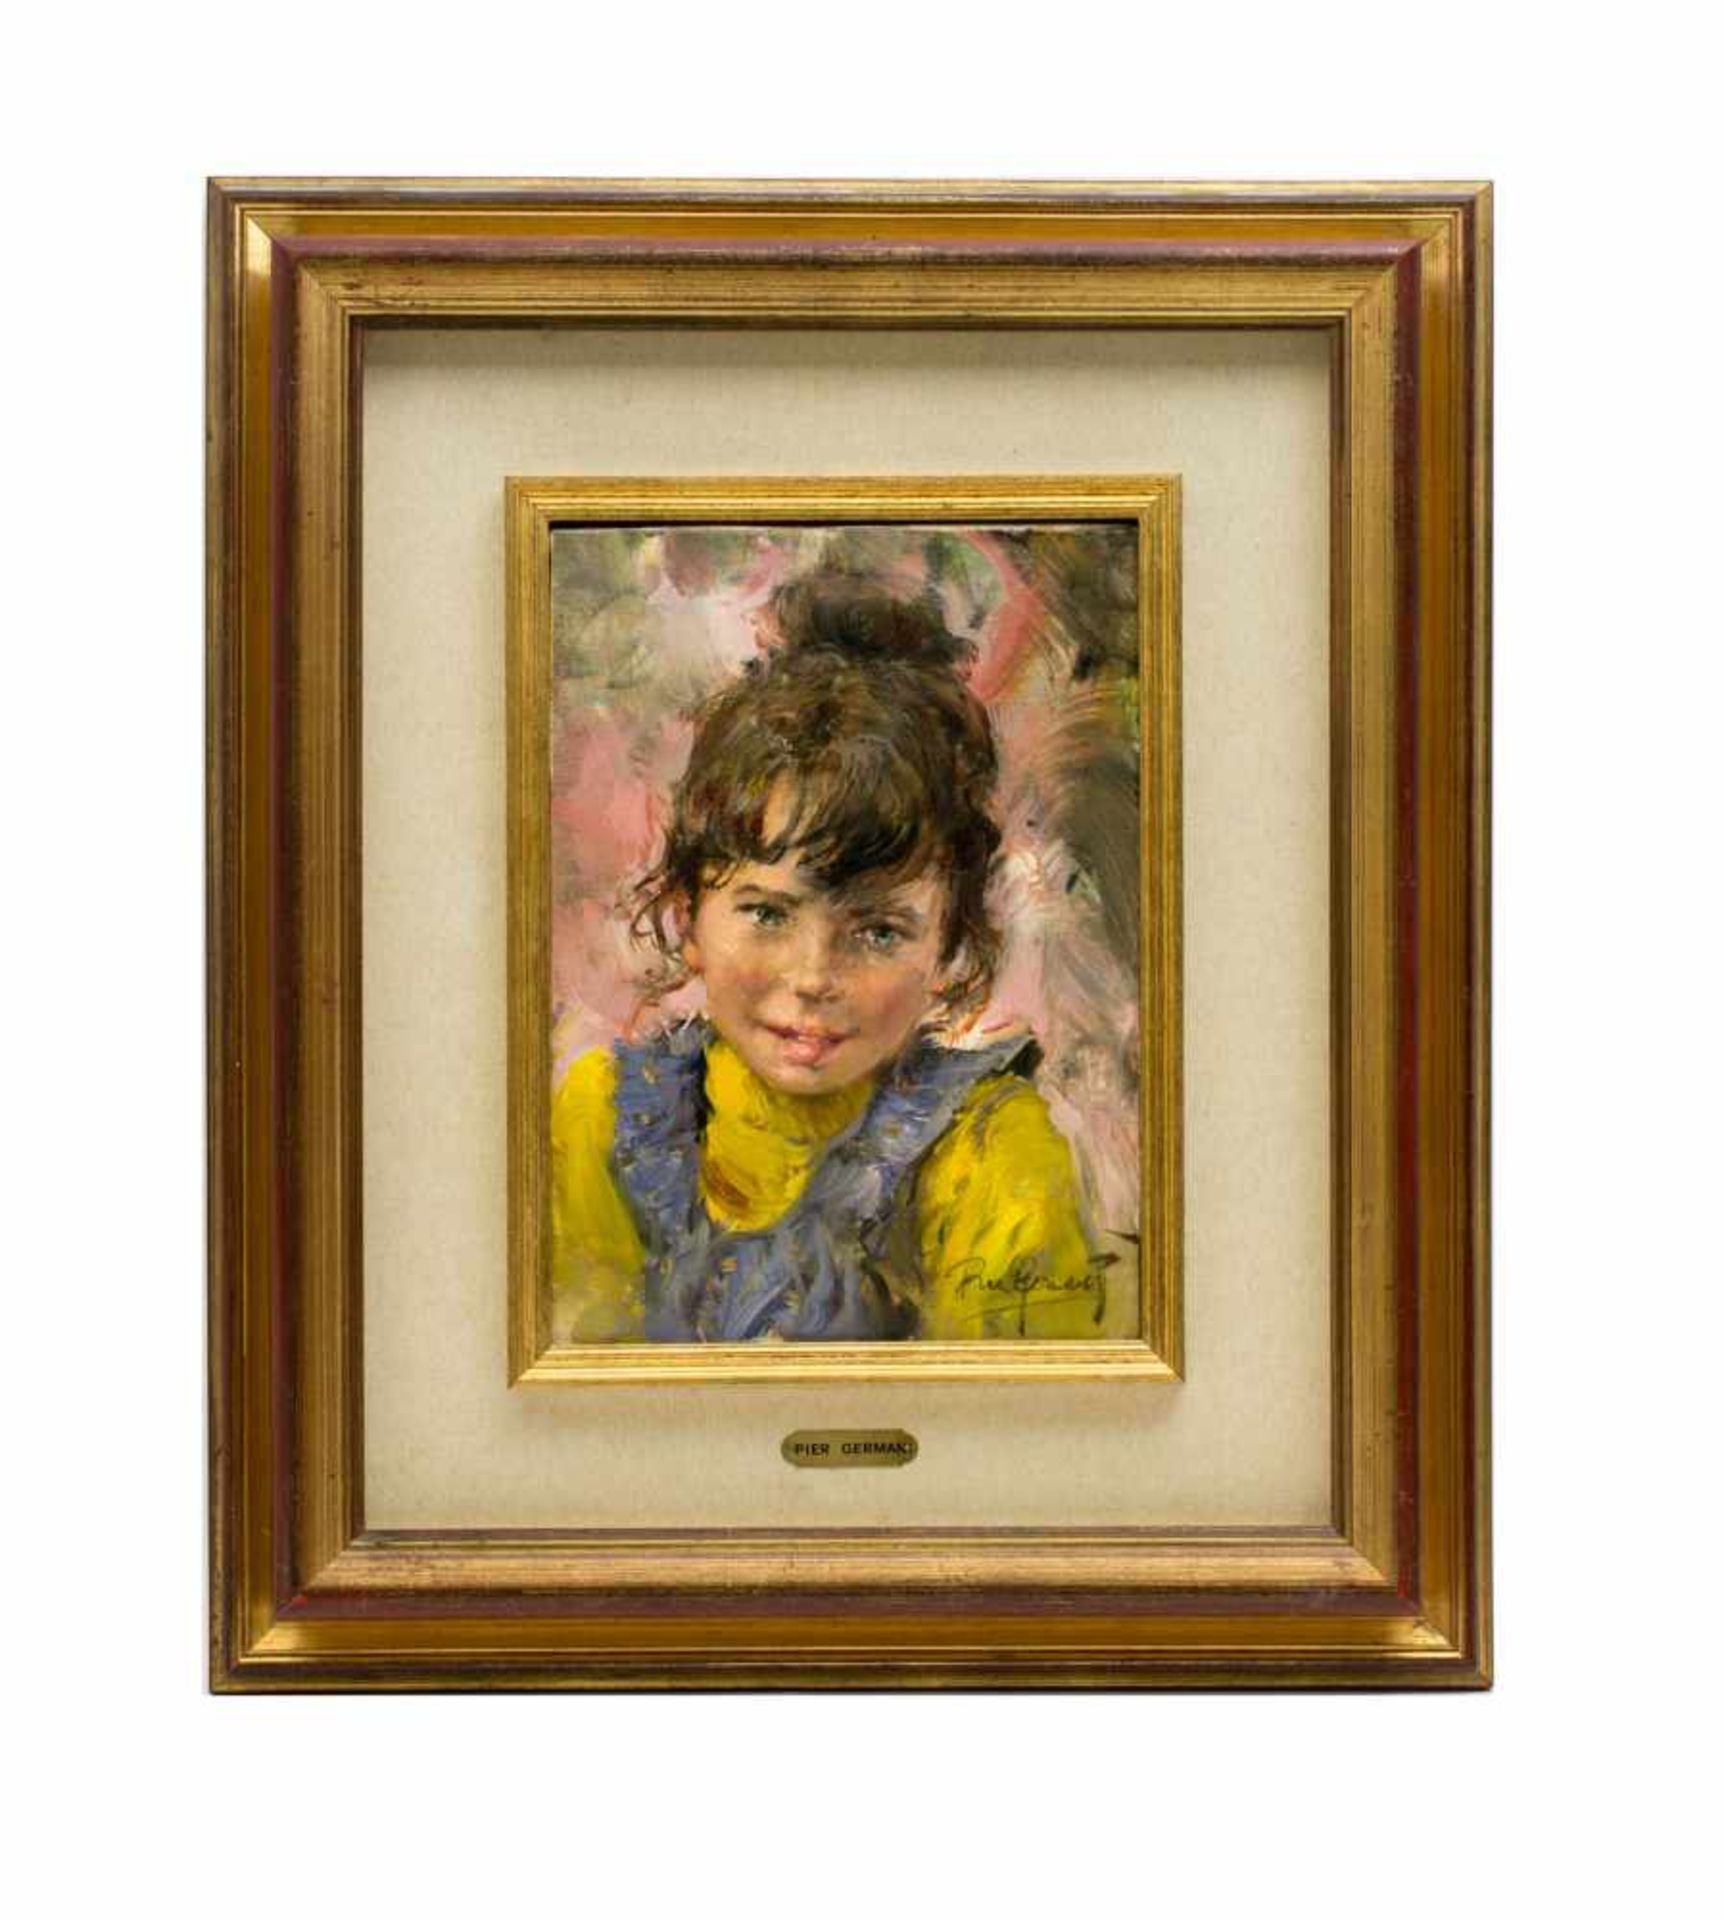 Pier Germani (20. Jh. Italien)Porträt von einem Mädchen, Öl auf Leinwand, 34,5 cm x 24,5 cm, unten - Bild 2 aus 3